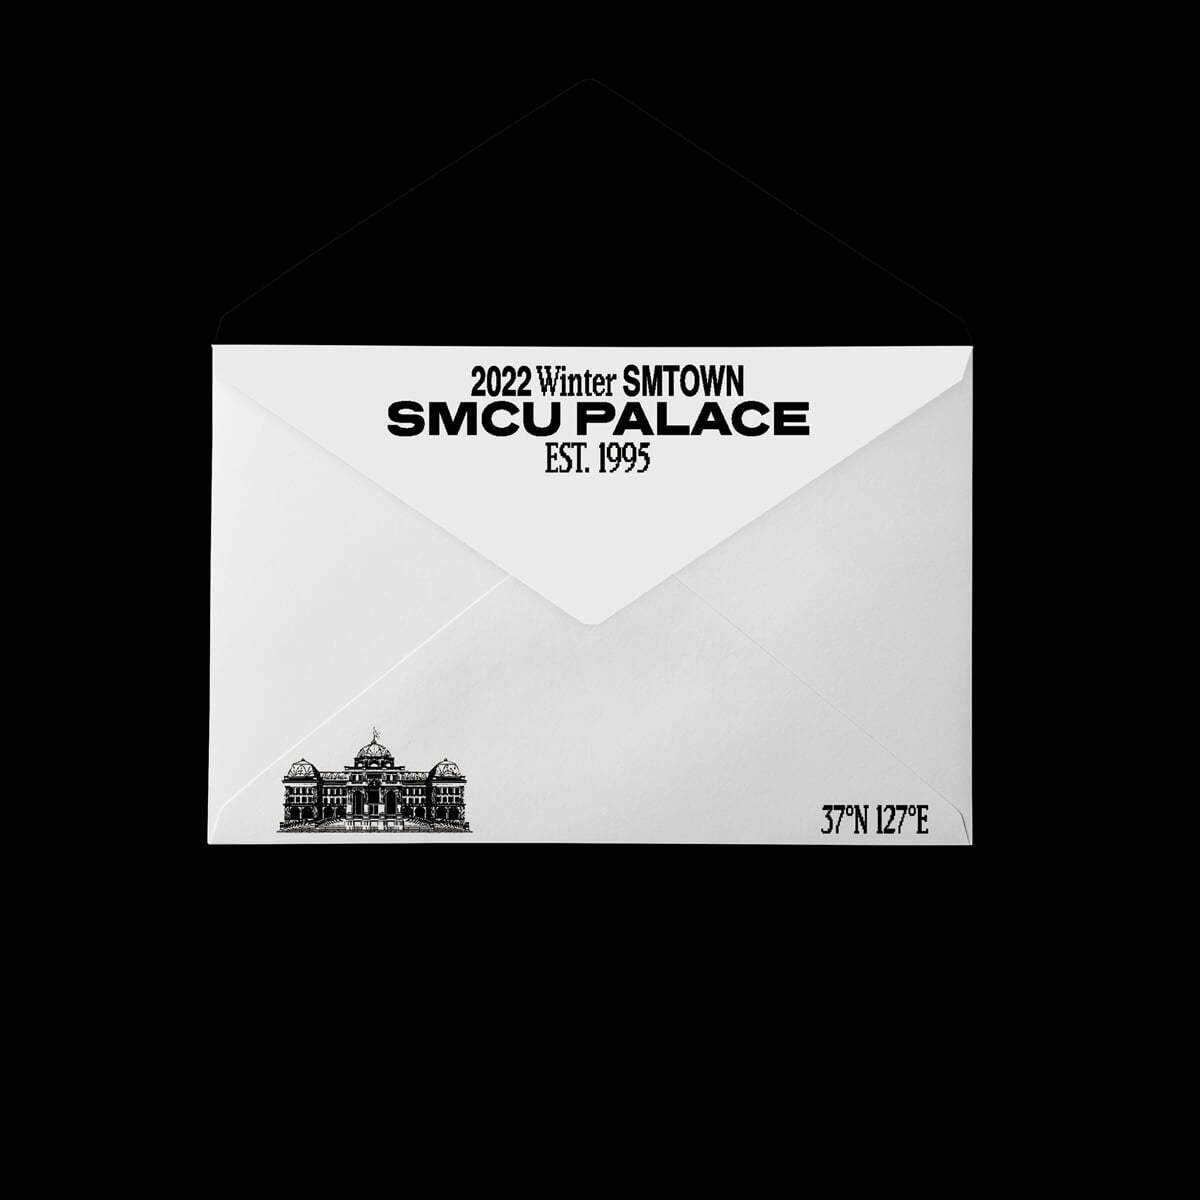 샤이니 온유, 키, 민호 (SHINee) - 2022 Winter SMTOWN : SMCU PALACE (GUEST. SHINee (ONEW, KEY, MINHO)) [Membership Card Ver.](스마트앨범)